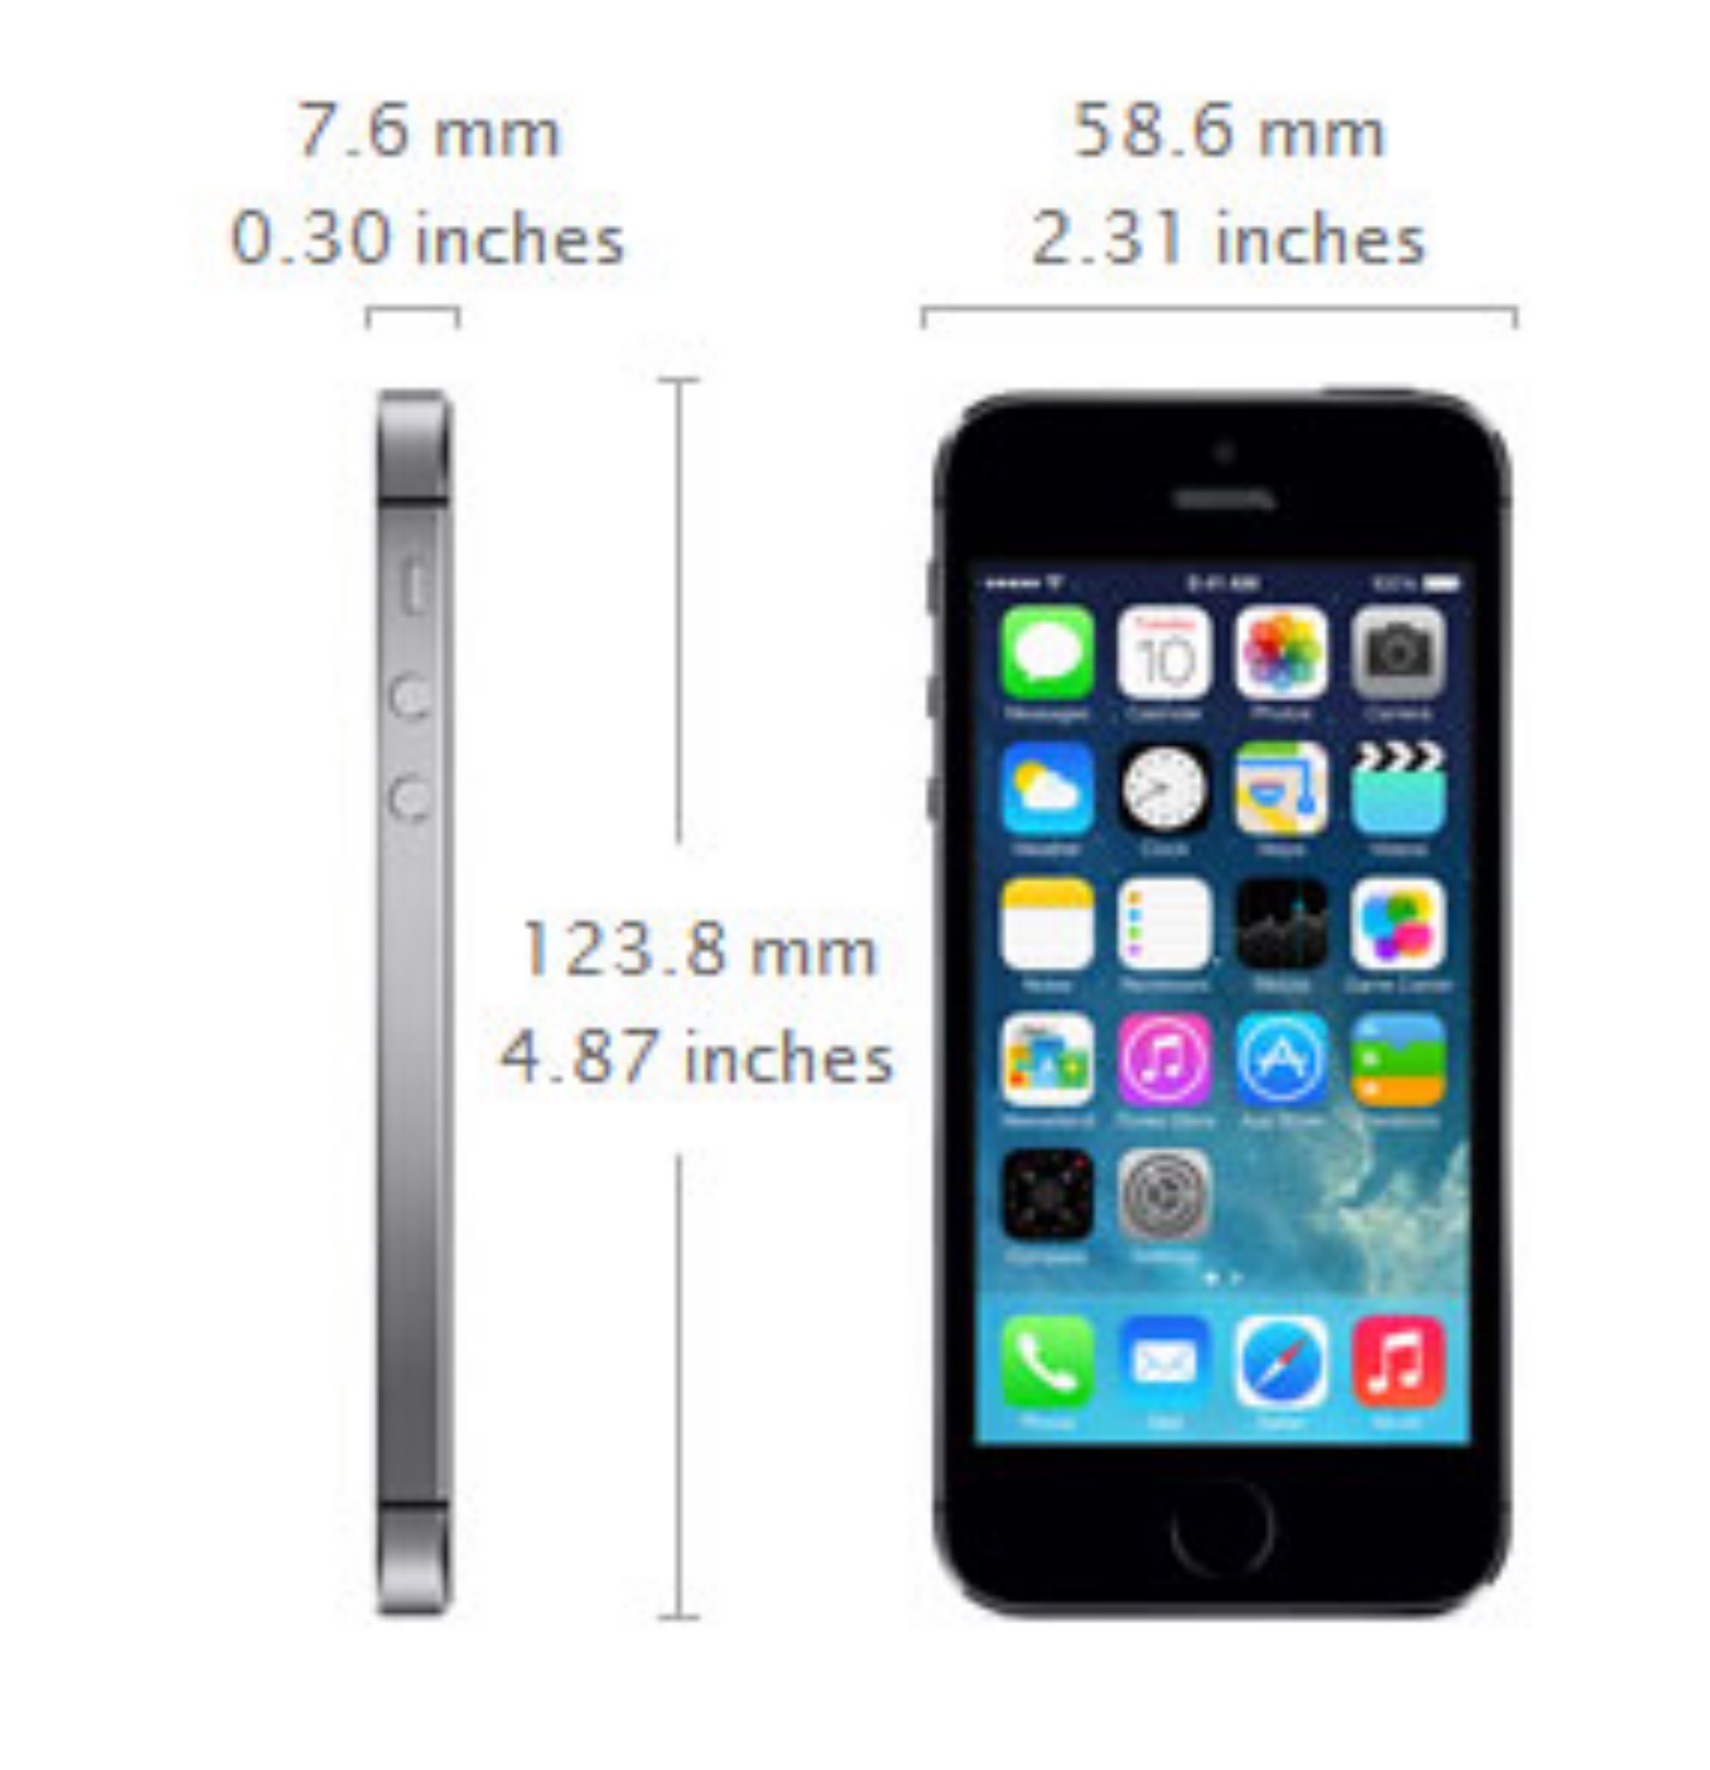 Dane techniczne iphone 5S kolory: Space Grey, Gold, Silver pamięć: 16 GB, 32 GB, 64 GB wymiary: 123.8 mm x 58.6 mm x 7.6 mm waga: 112 g procesor: A7 64-bitowy kooprocesor: M7 WLAN: 802.